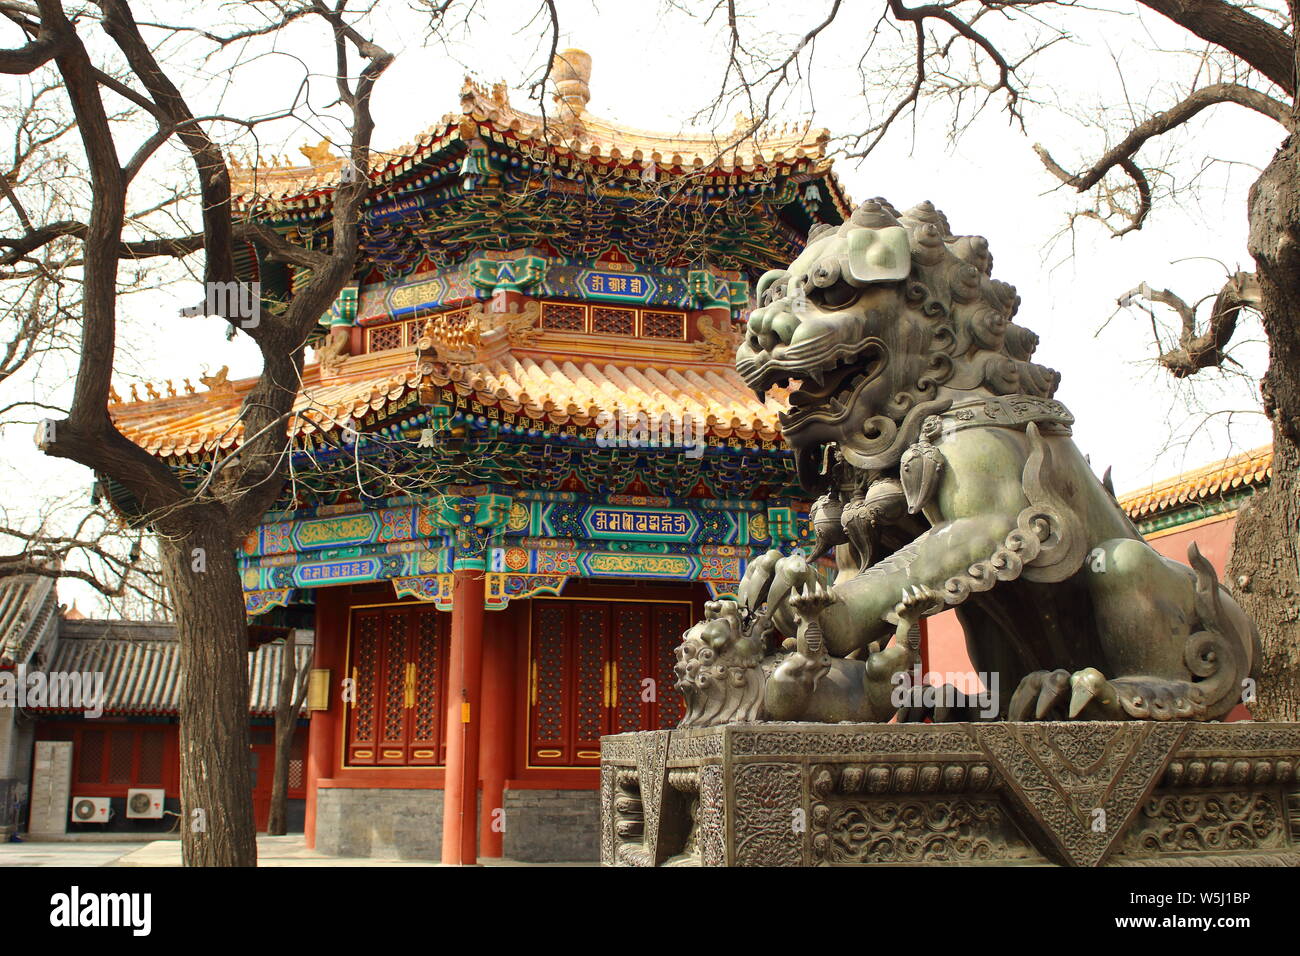 Lama del tempio di Pechino. Il Templo de los Lamas en Pekín. Foto Stock